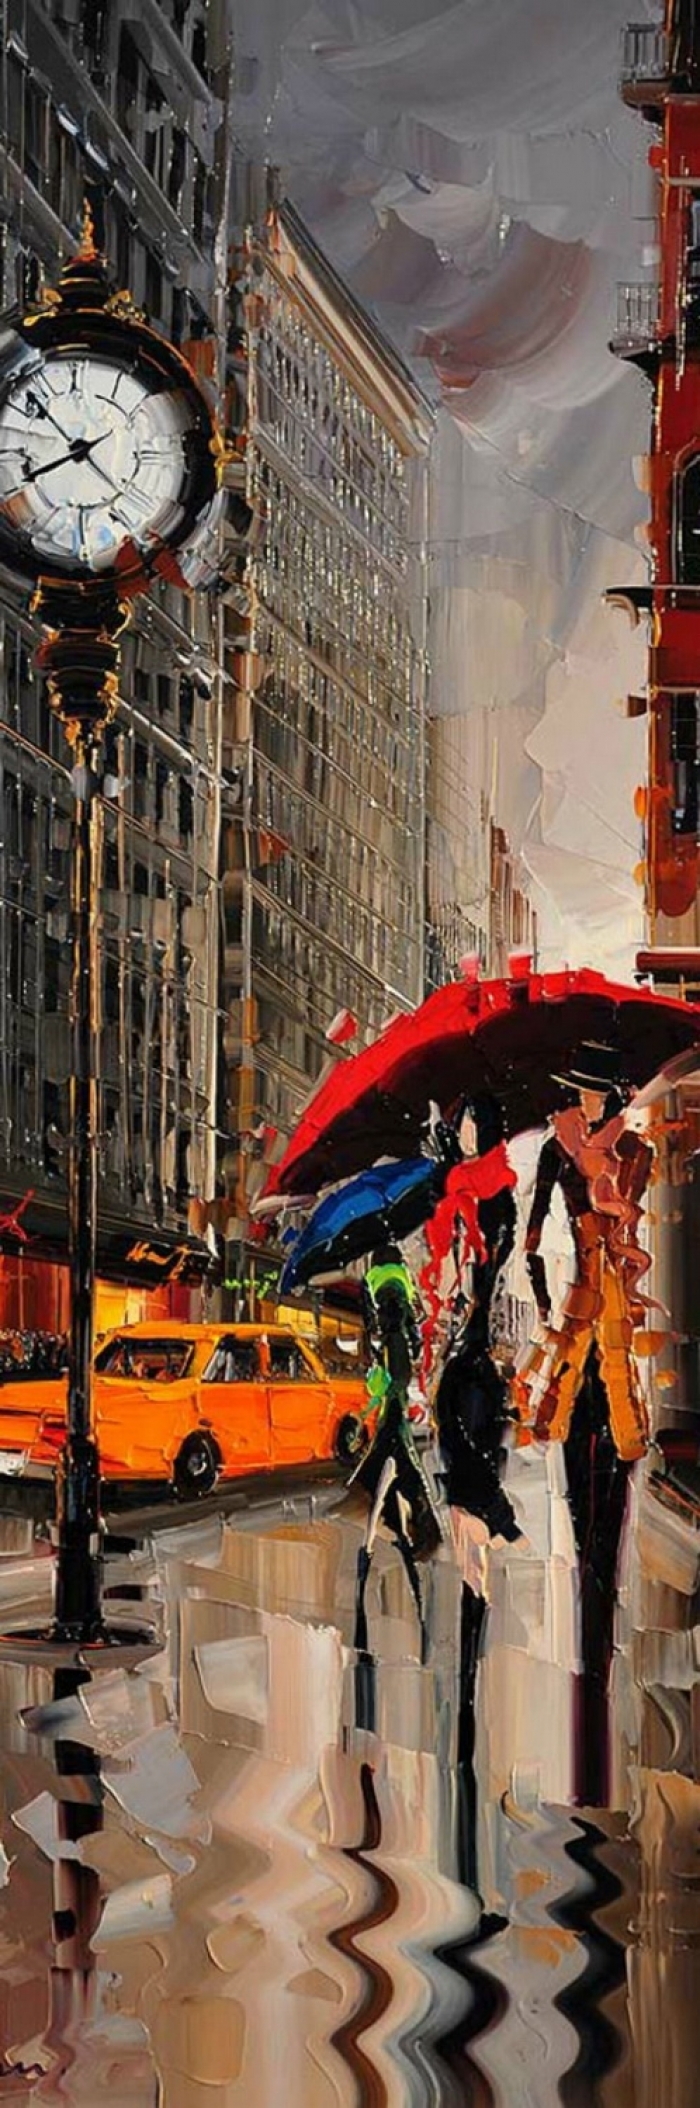 Kal Gajoum's Contemporary Oil Painting - Red Umbrella